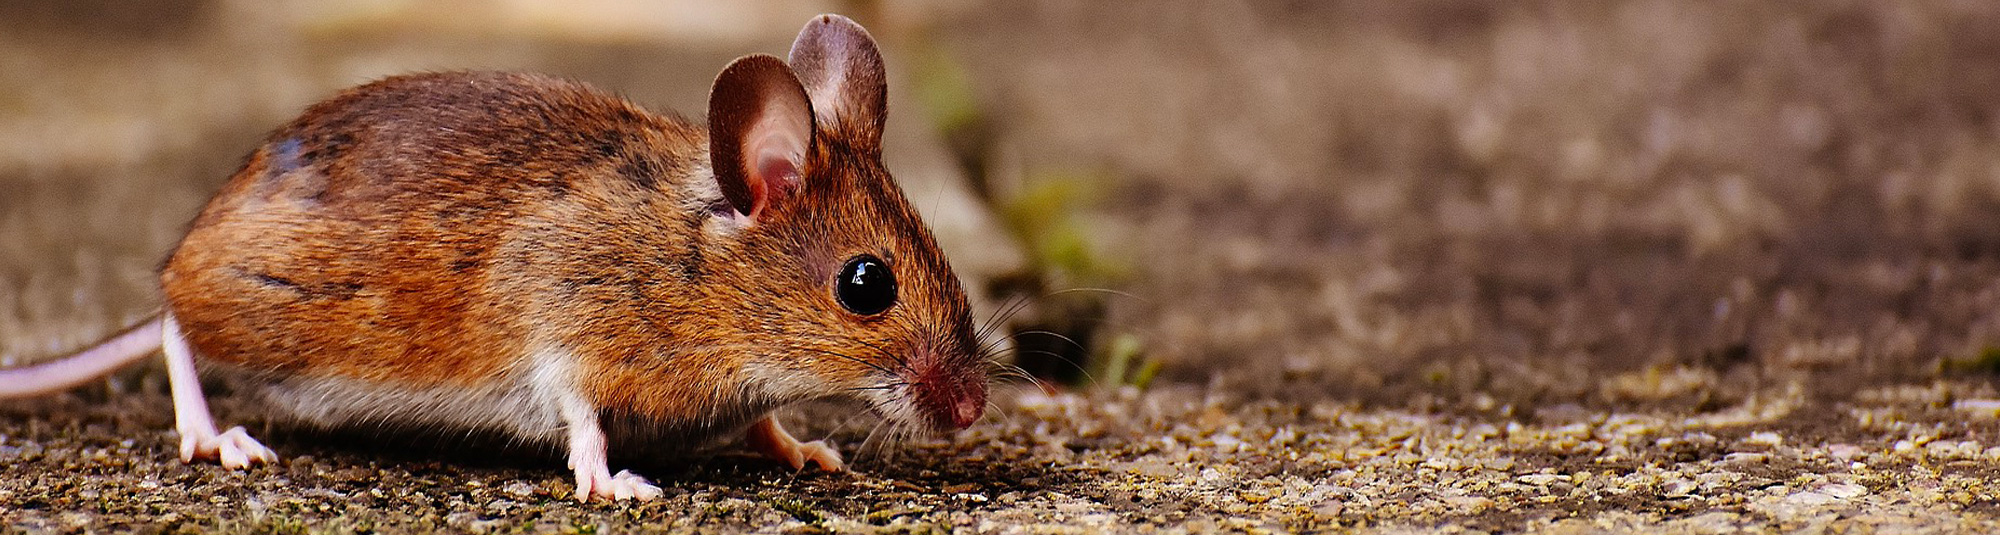 Piège à souris : Les pièges à souris les plus efficaces